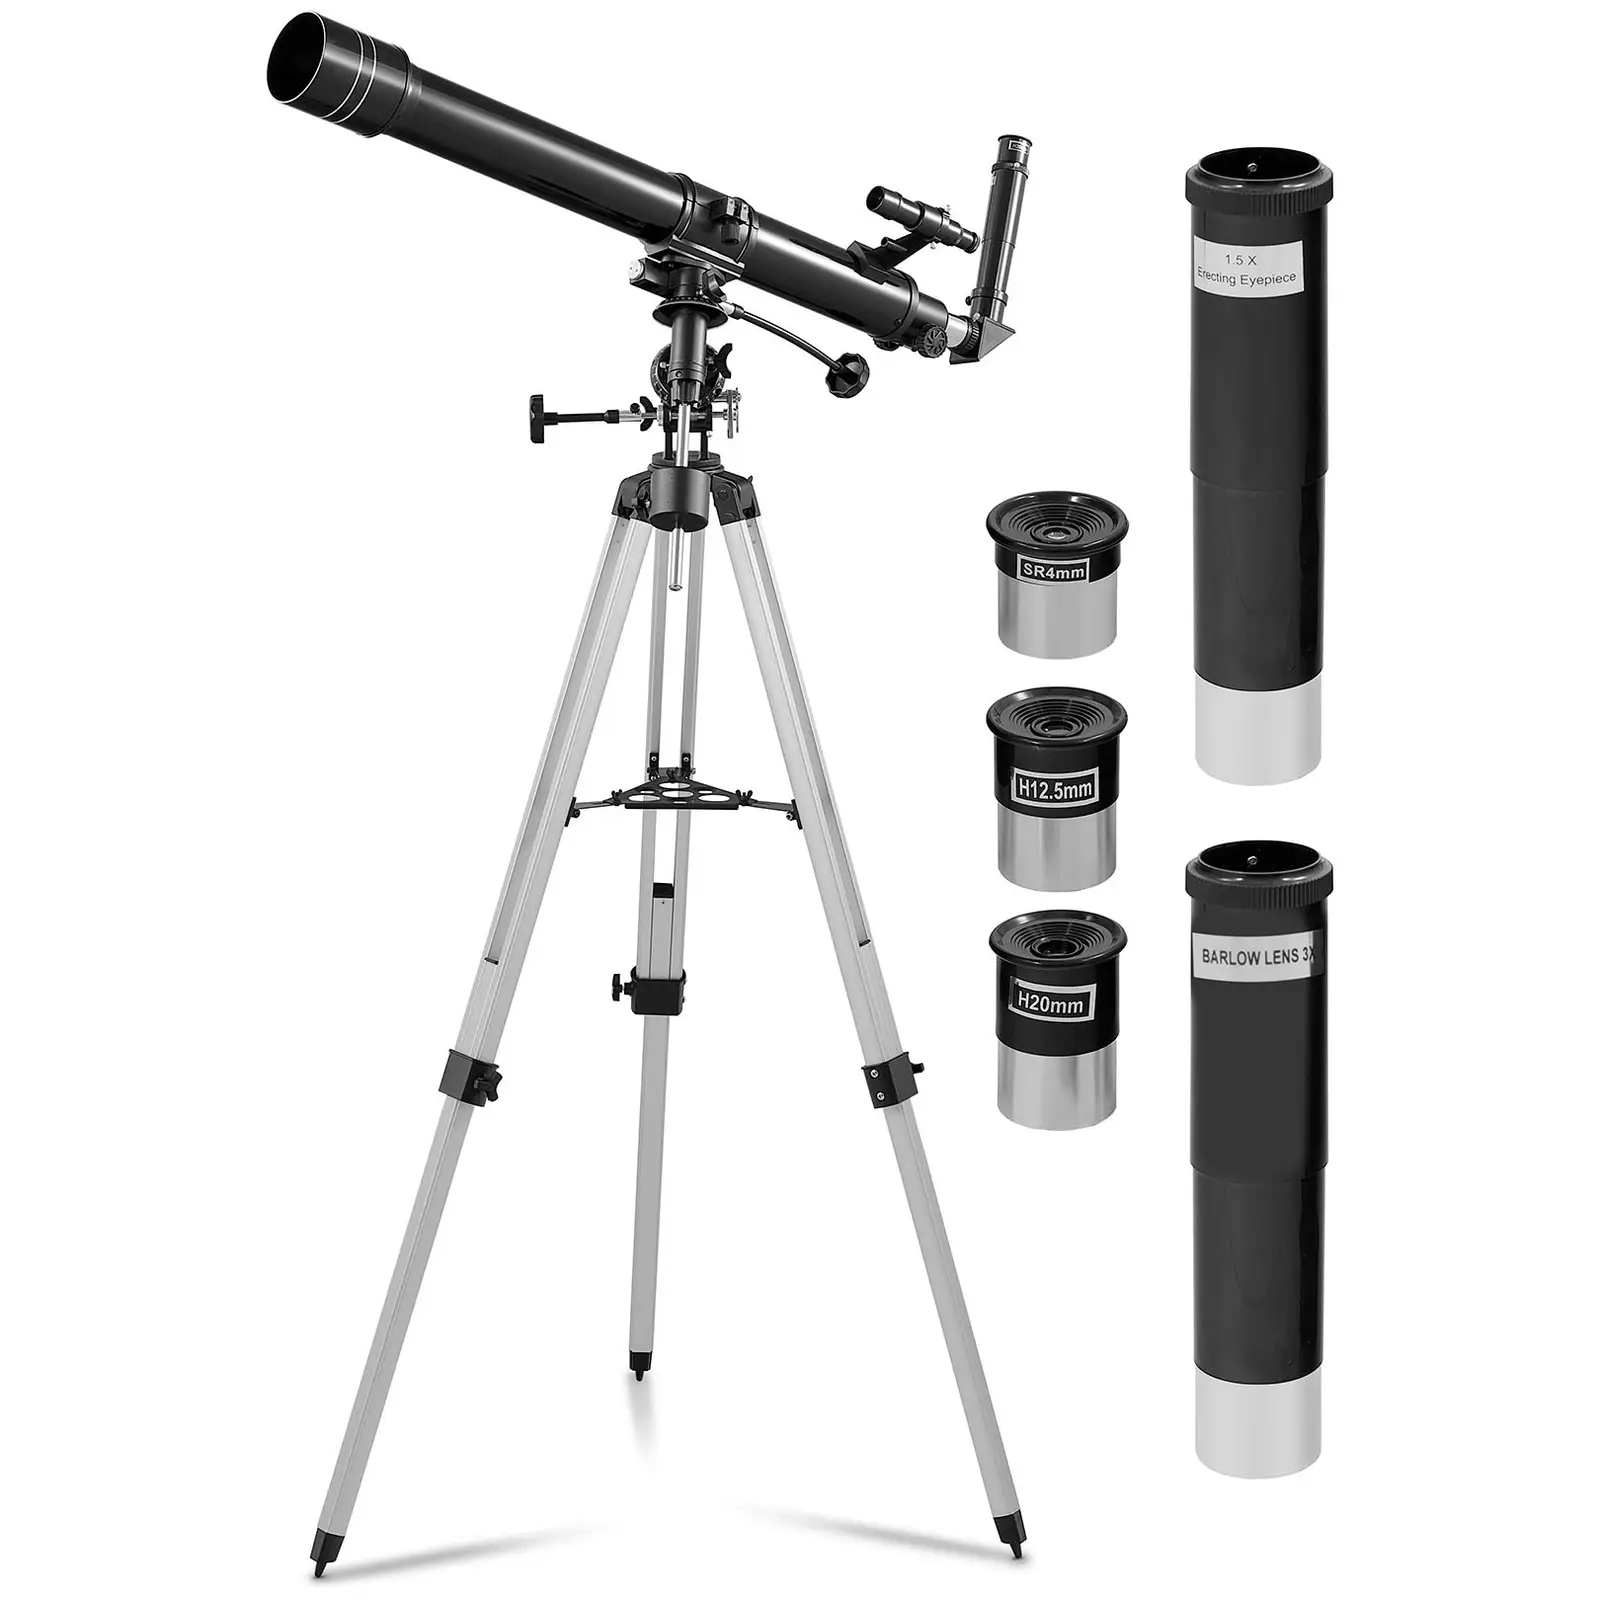 Teleskop - 70 mm objektiv - 900 mm brændvidde - inkl. stativ